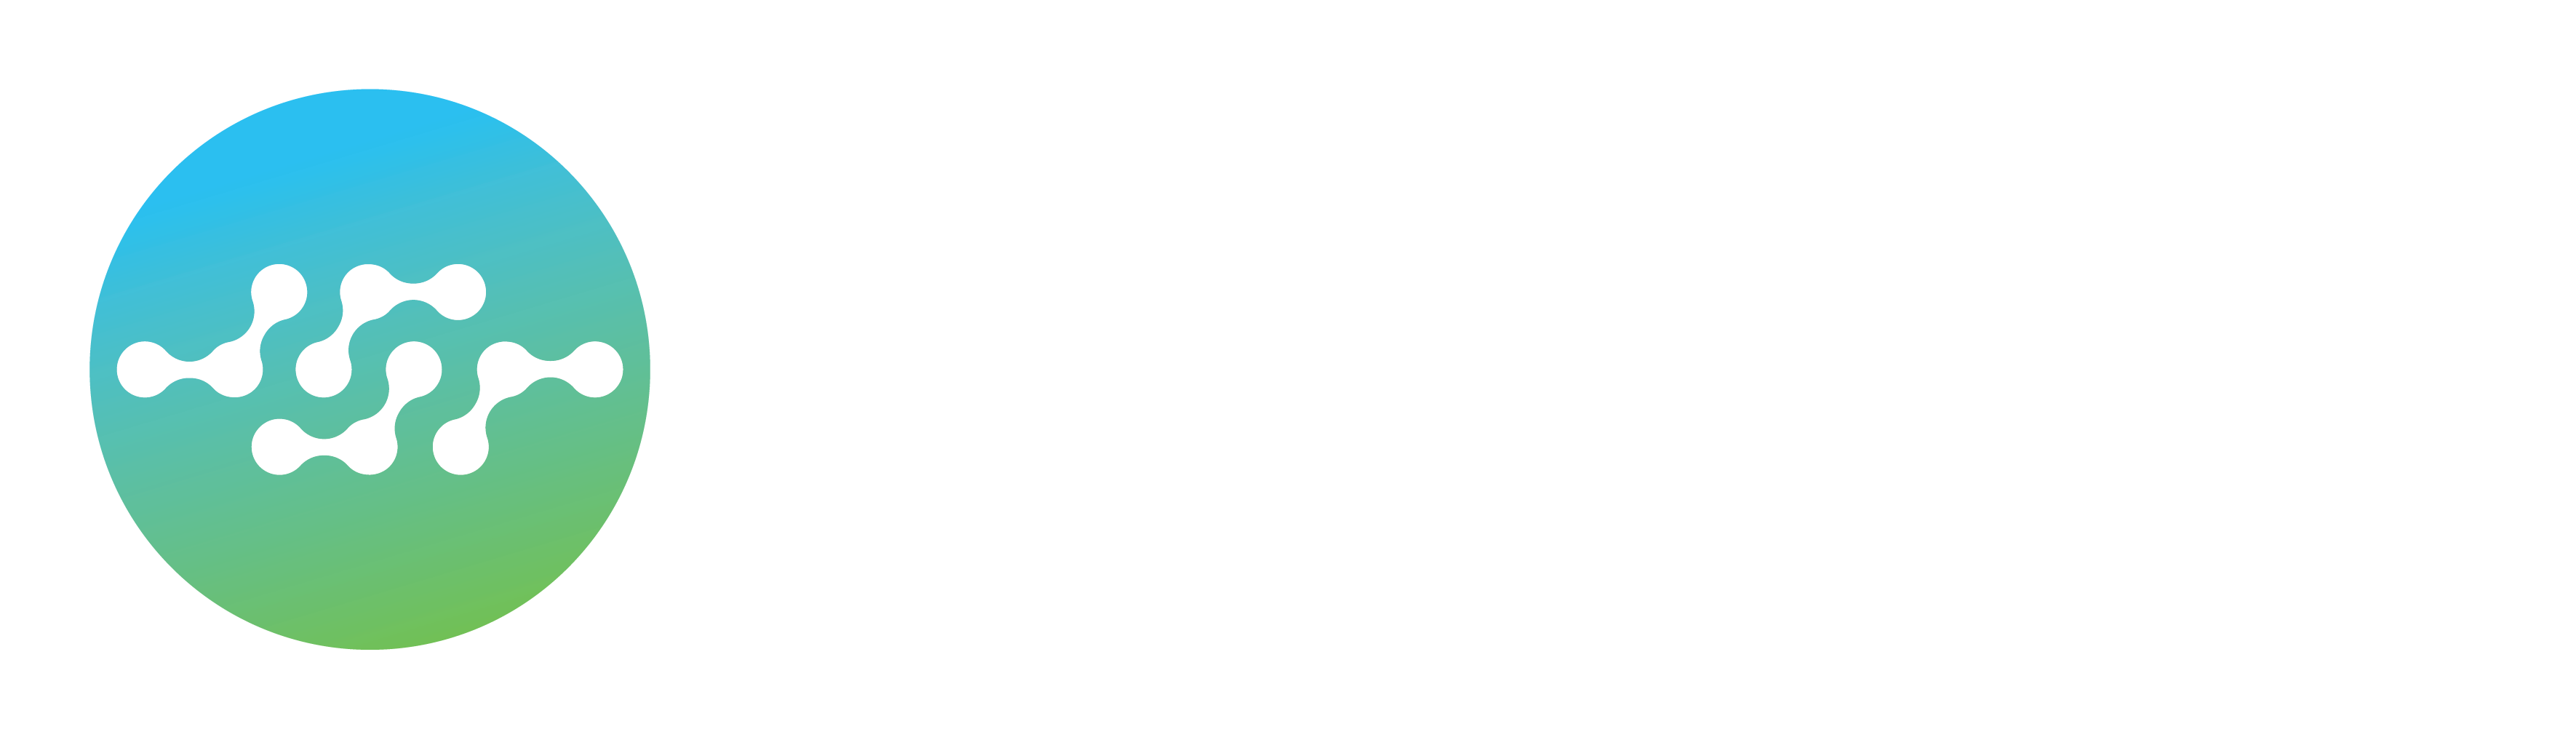 JSR LS Reverse White Horizontal Logo 2020MAY31